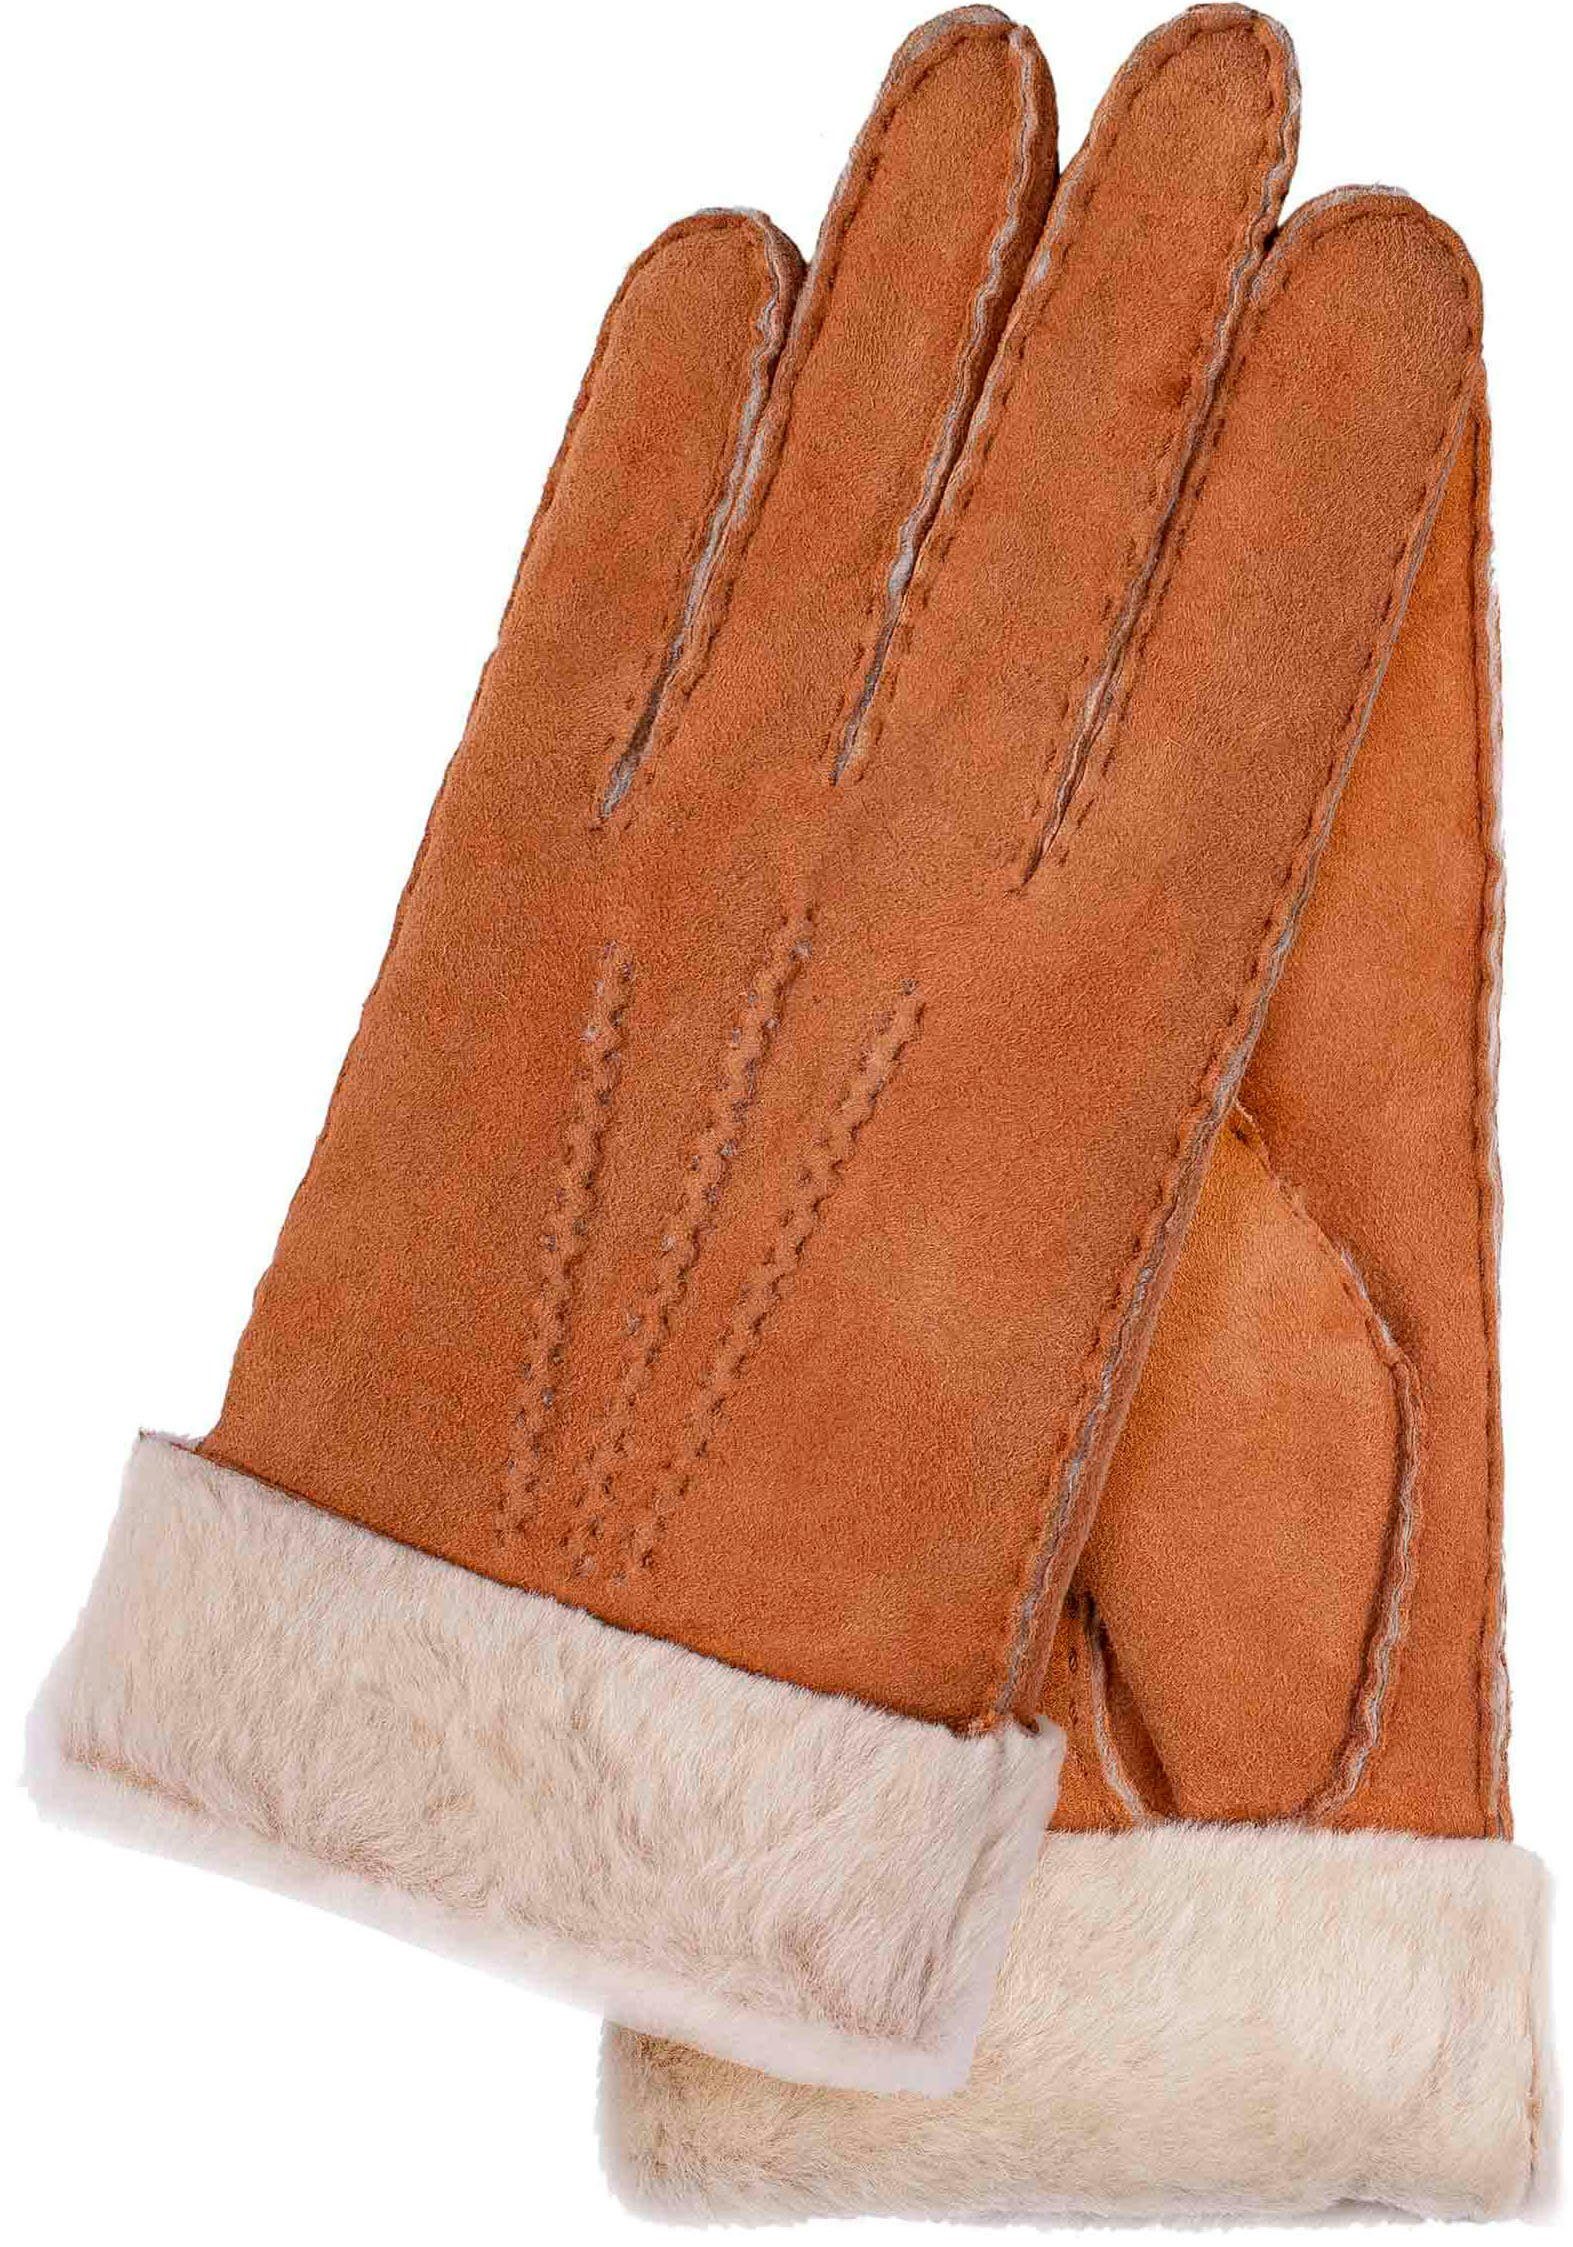 KESSLER Lederhandschuhe klassiches Design mit 3 Aufnähten und breitem Umschlag honey | Handschuhe